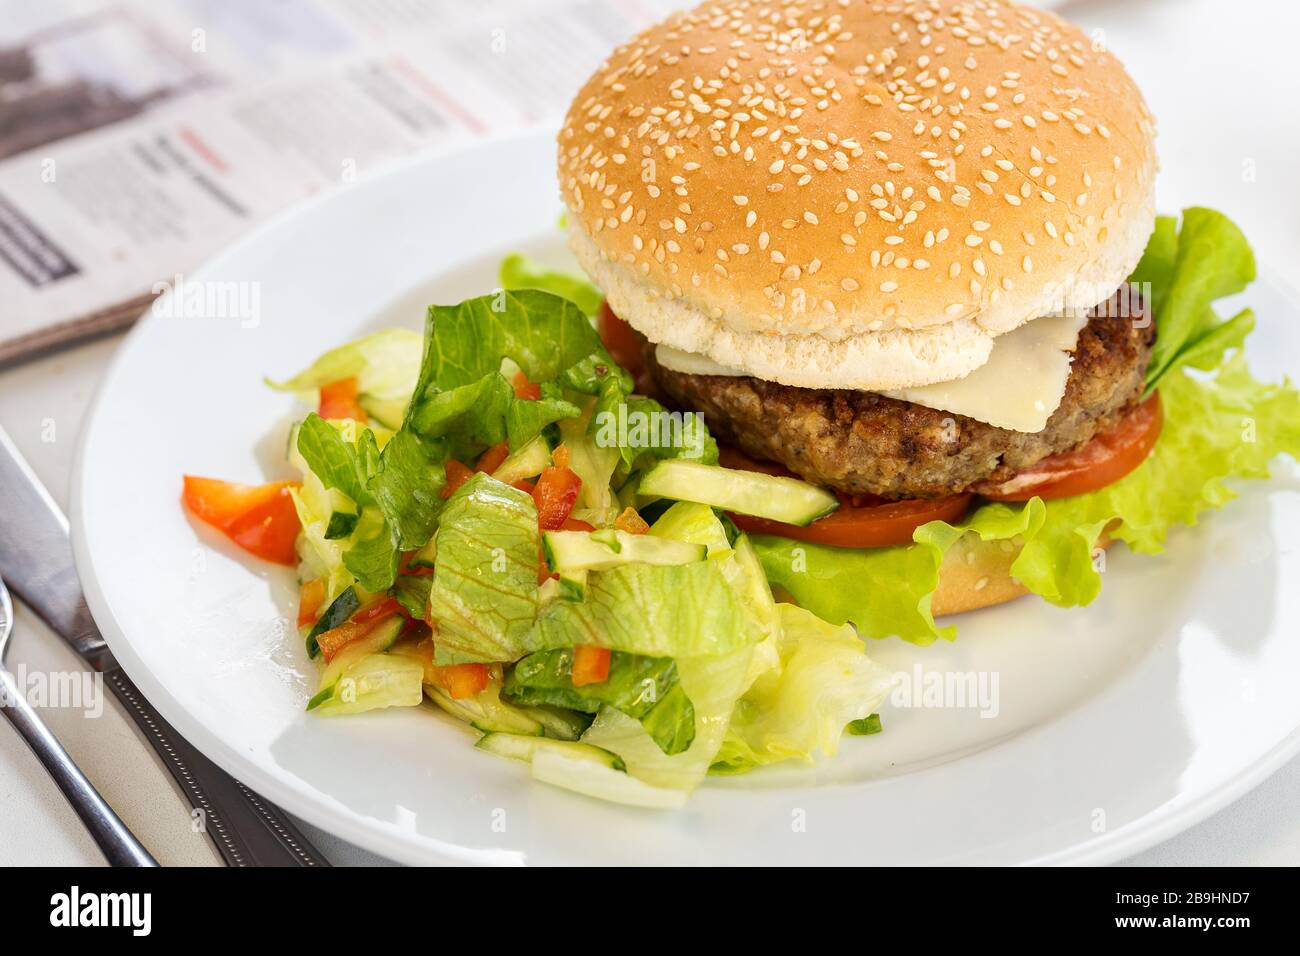 Délicieux hamburger de bœuf grillé sur une assiette avec garniture de salade Banque D'Images